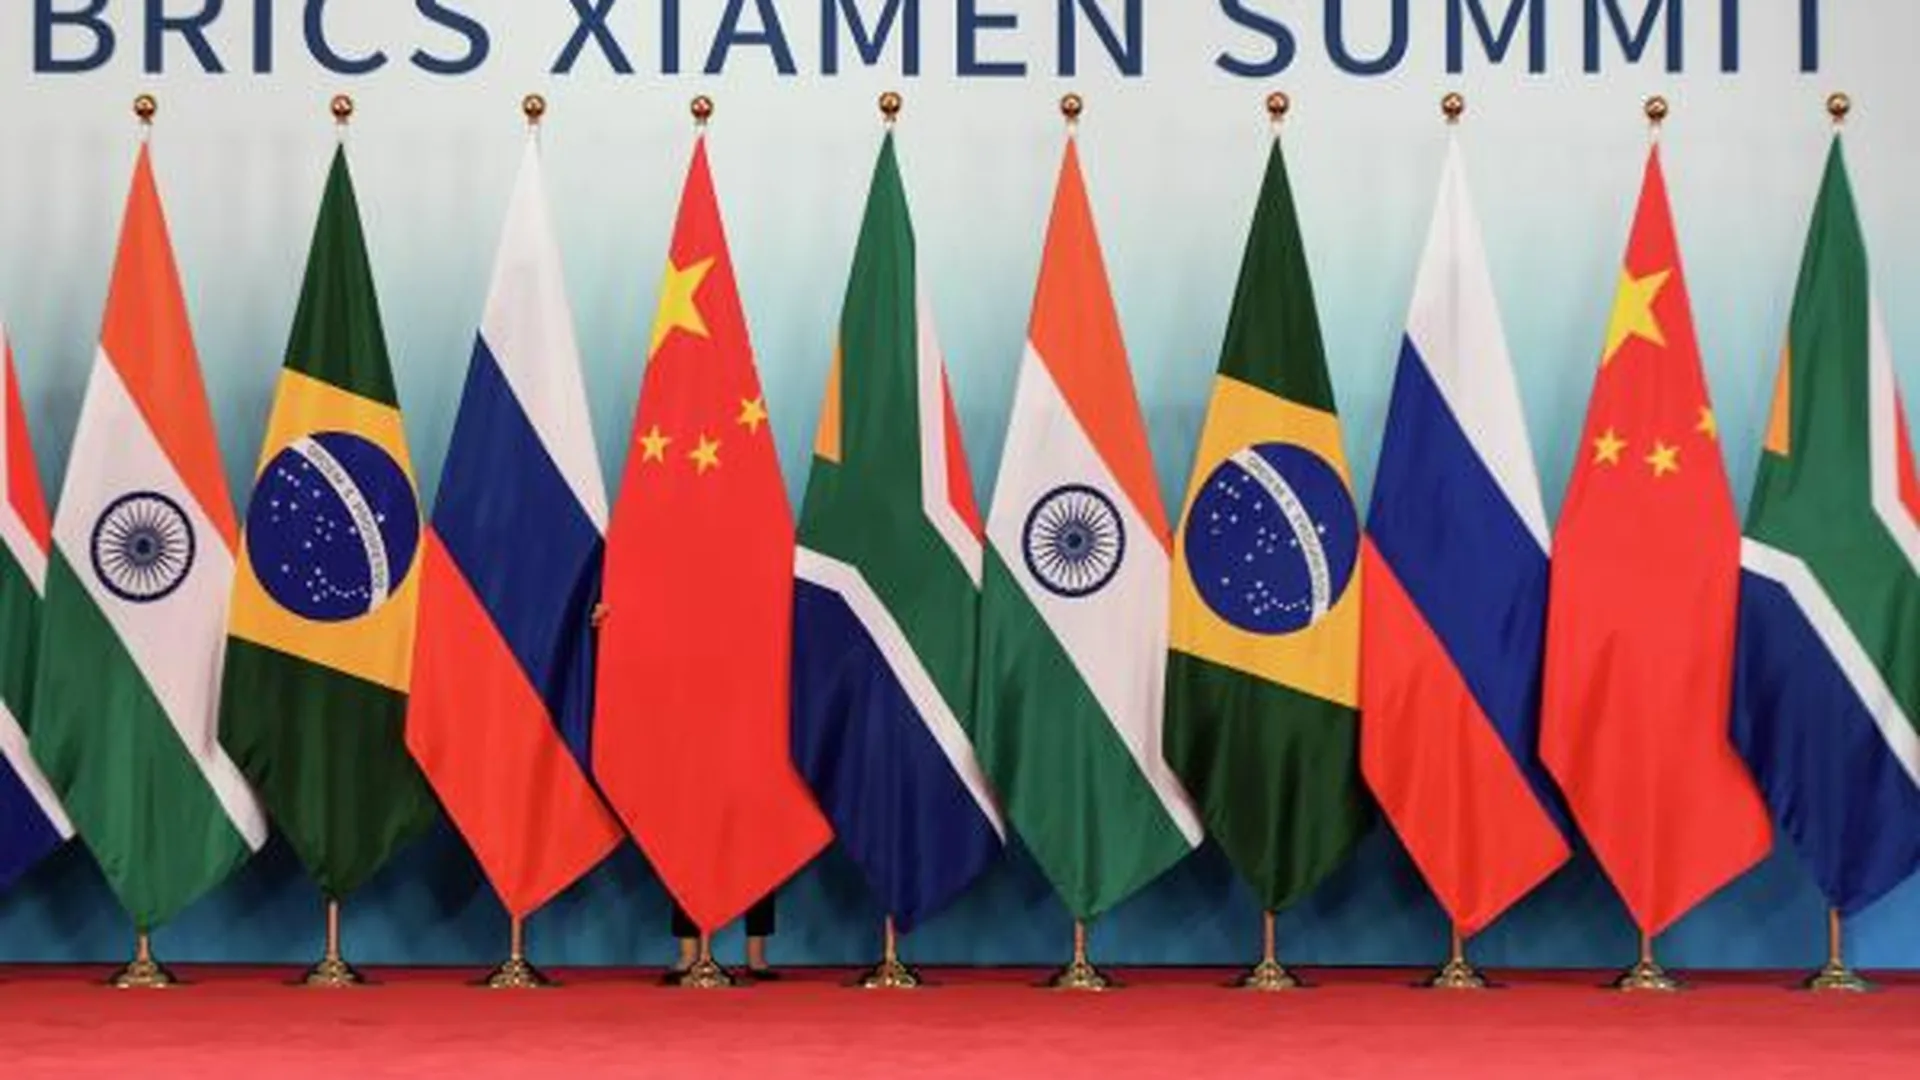 Флаги стран — участниц встречи лидеров БРИКС: Бразилии, России, Индии, Китая и ЮАР.